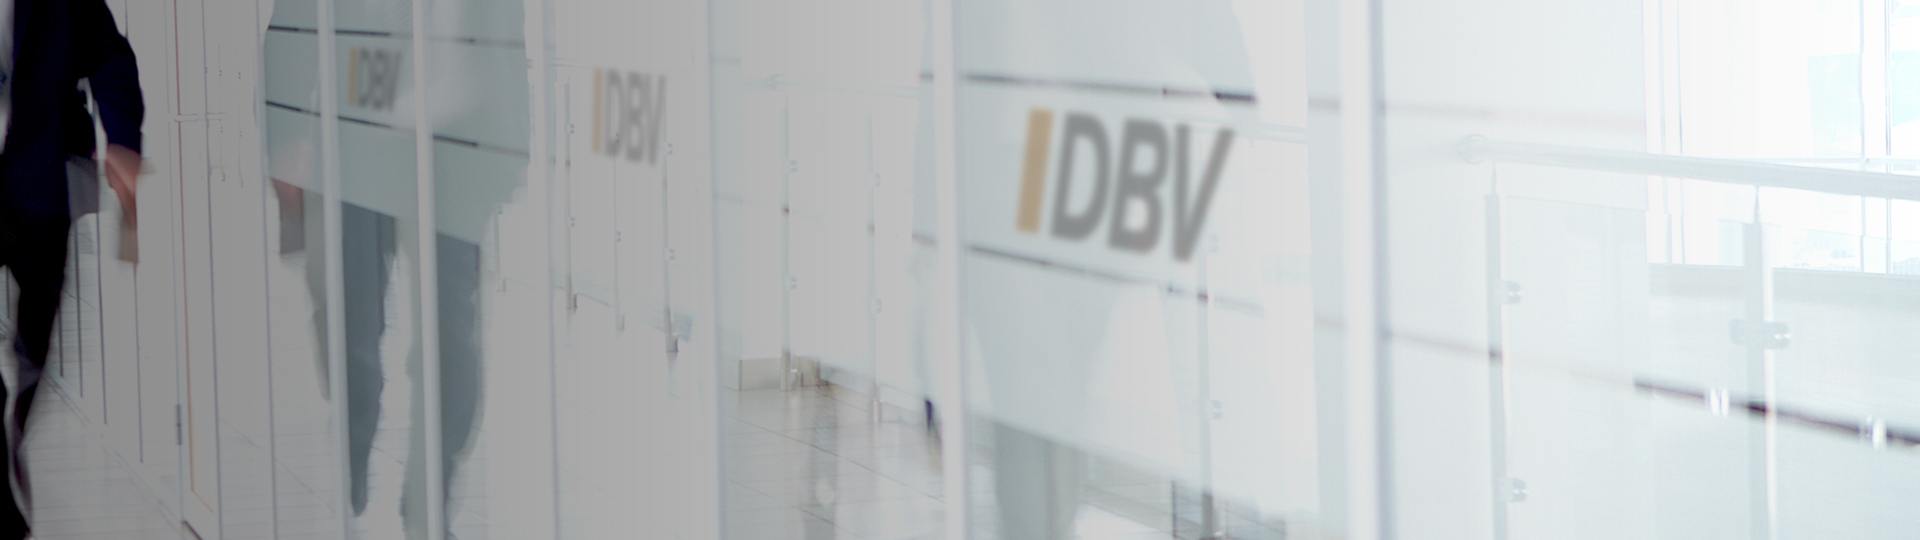 DBV Günzburg ABSOLUT Finanz GmbH & Co. KG | Beihilfe